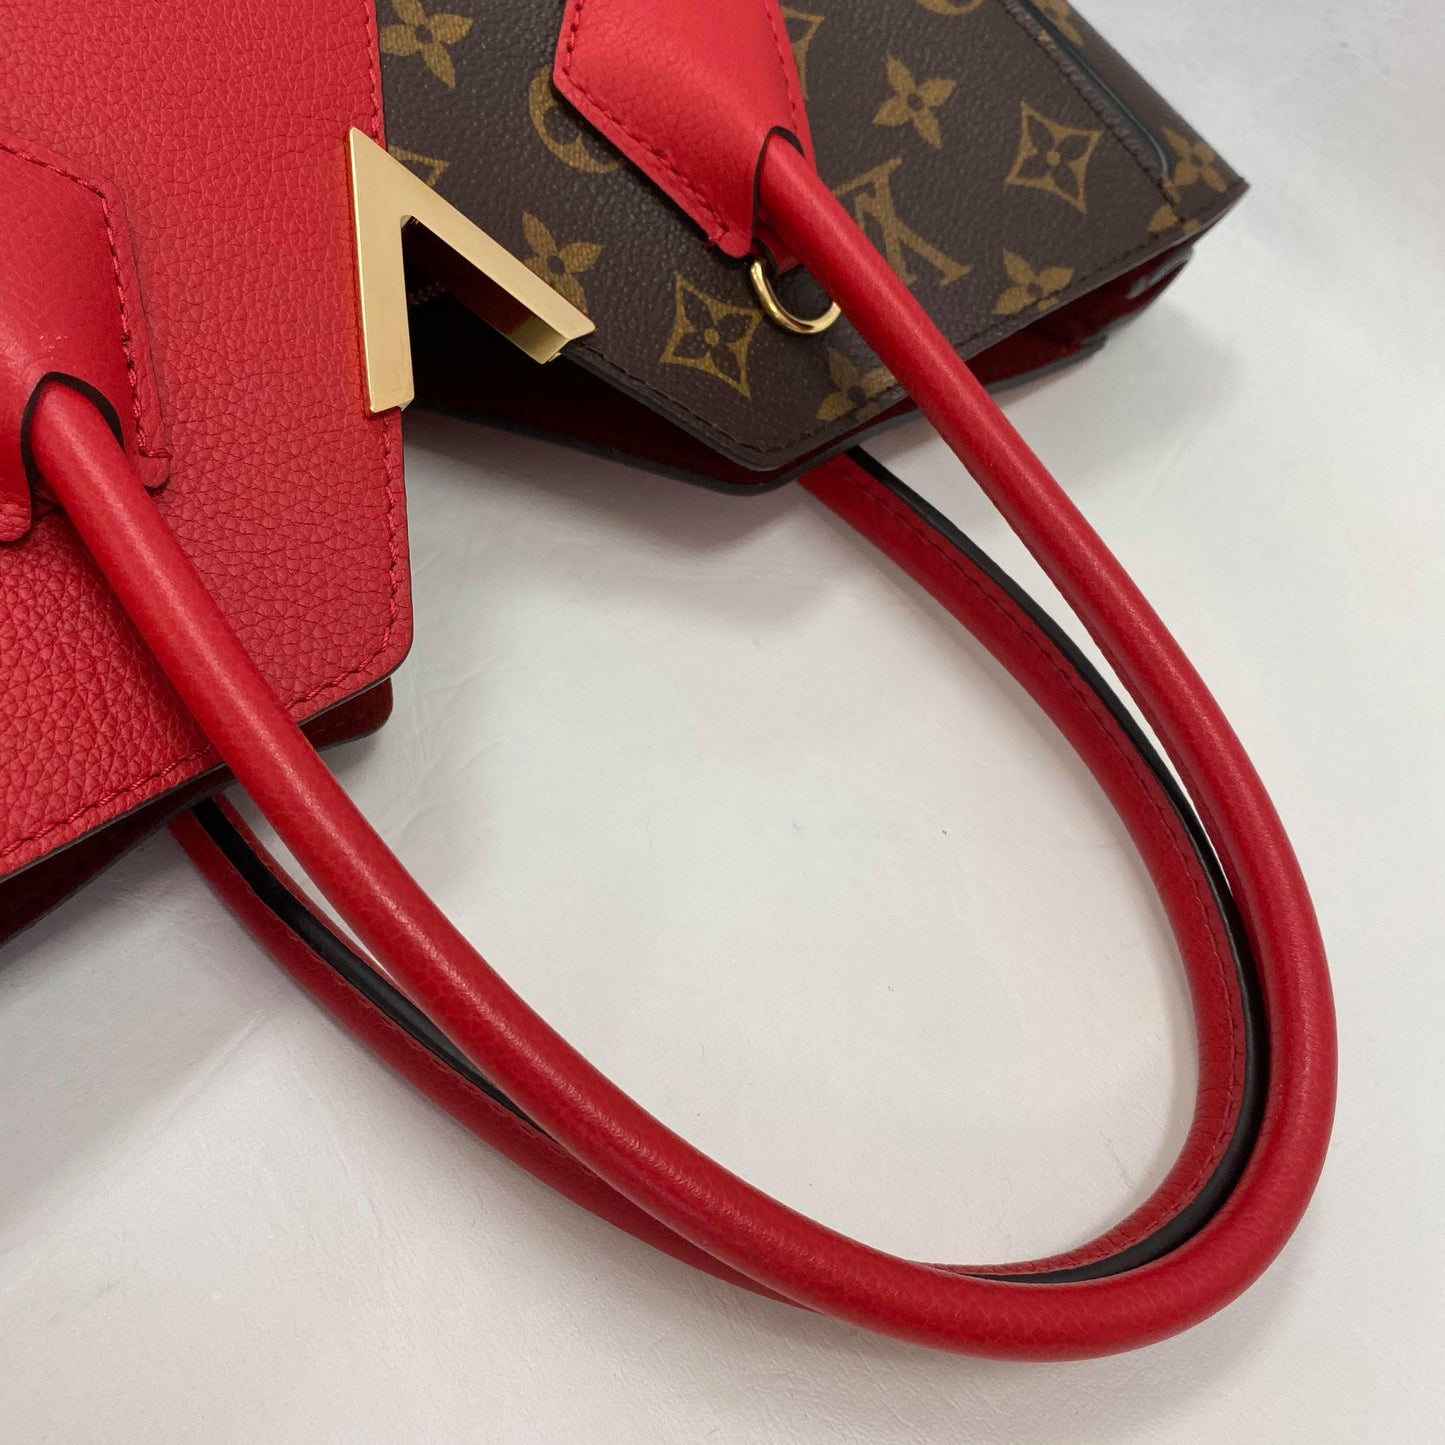 Authentic Louis Vuitton Red/Monogram Kimono PM Bag